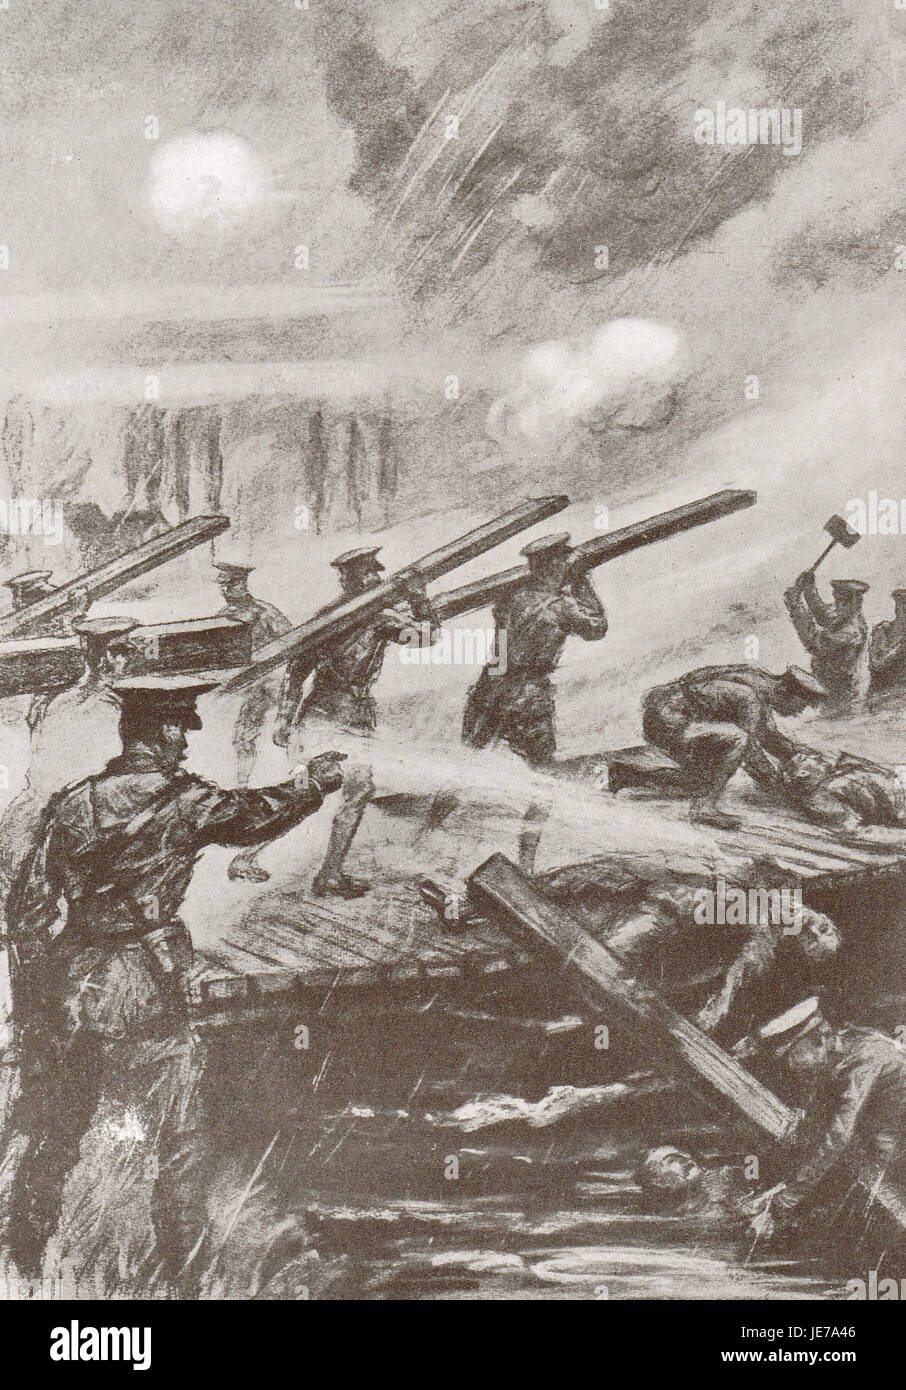 La construcción de un puente bajo fuego de proyectiles. Batalla de Aisne, 1914 Foto de stock